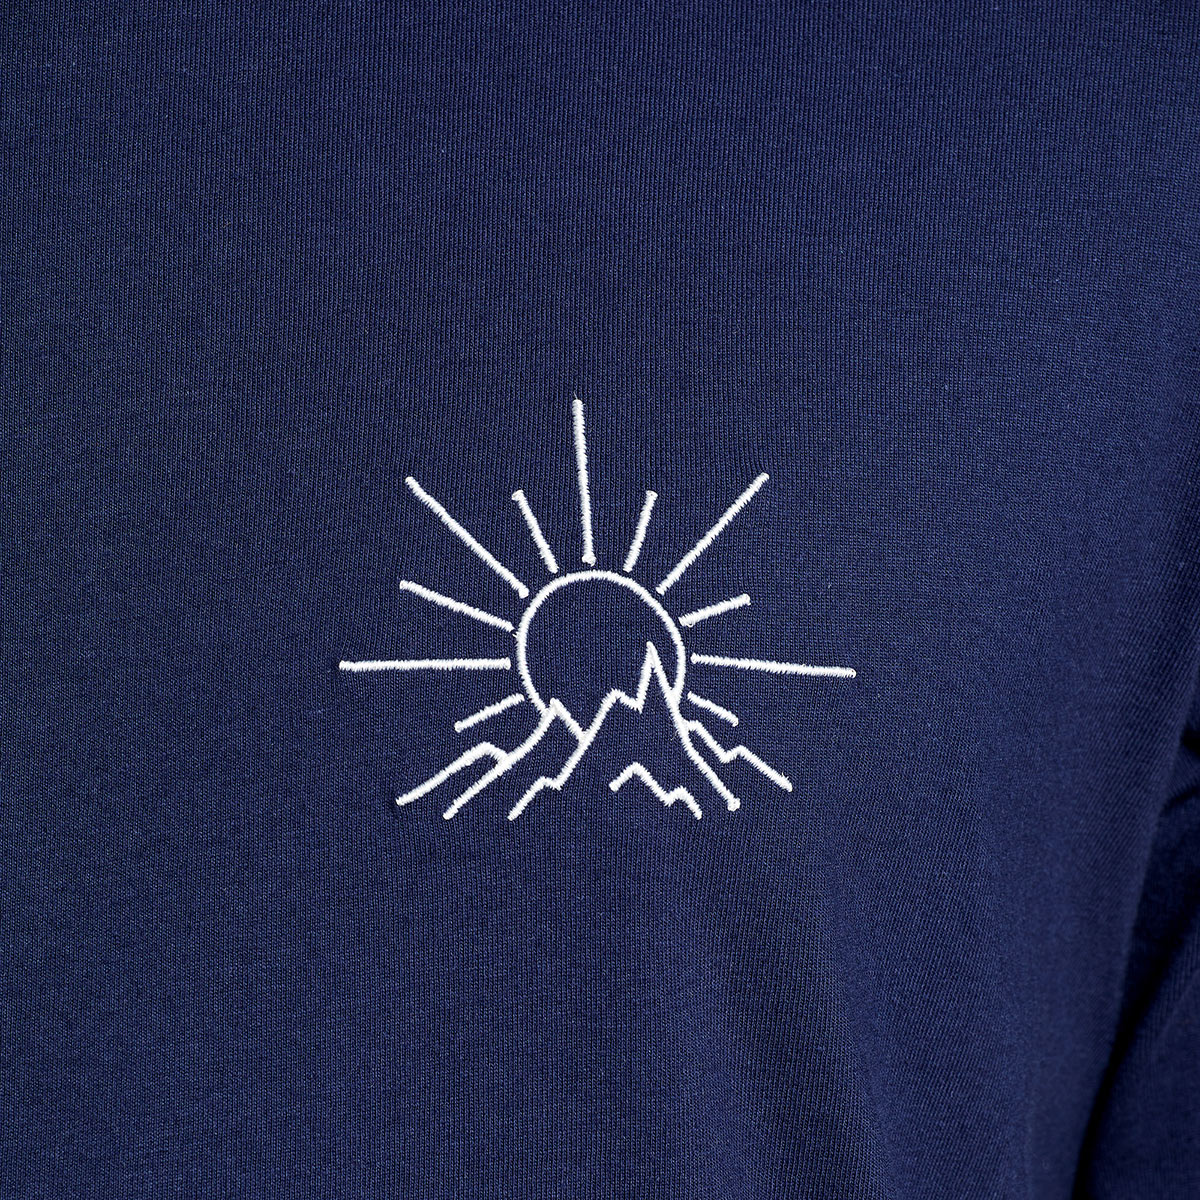 dunkelblaues T-Shirt von Dedicated Brand aus Bio-Baumwolle mit weißer Stickerei mit Berg und aufgehender Sonne Motiv auf der Brust.